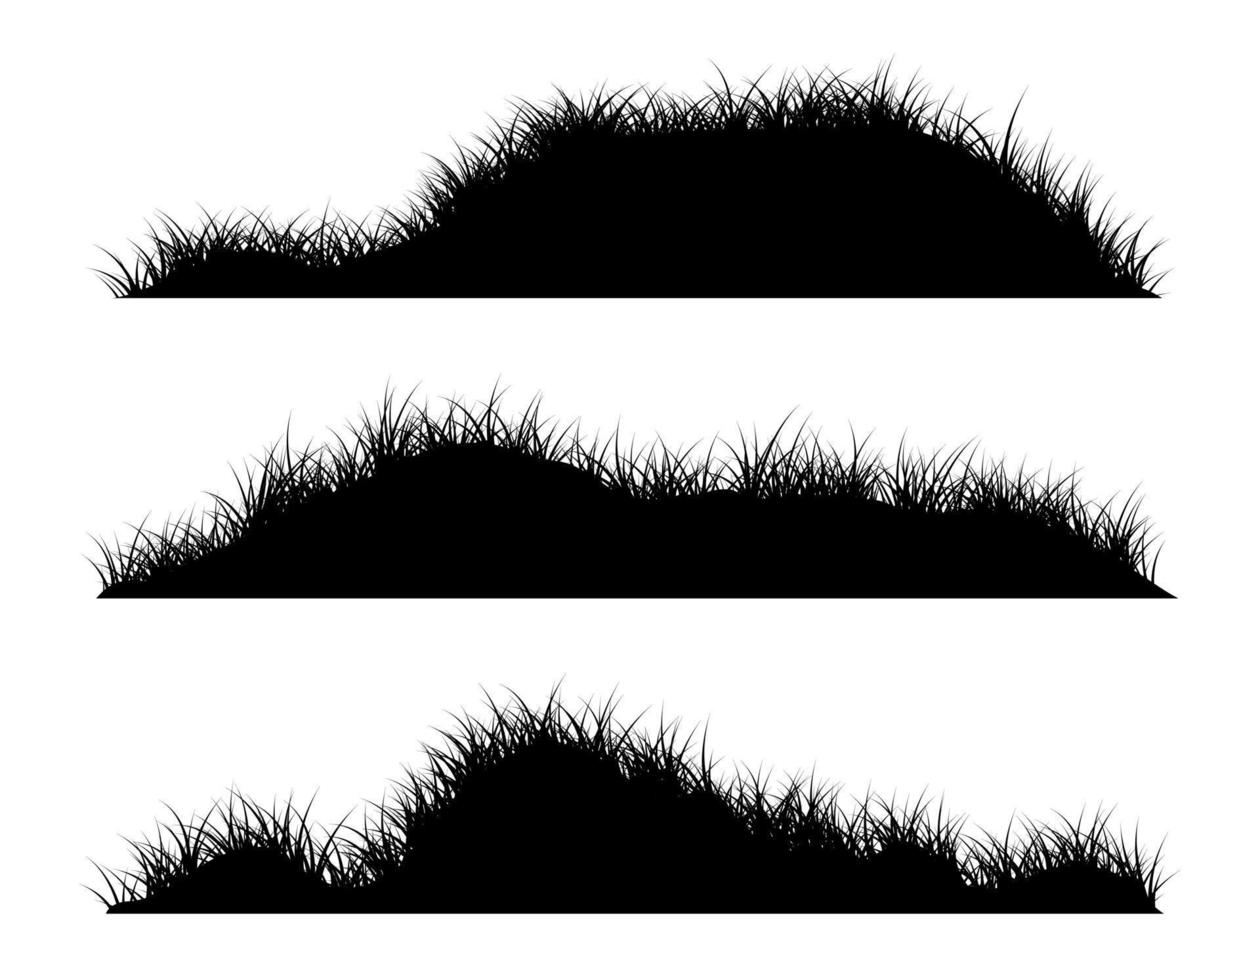 grass hills silhouette vector